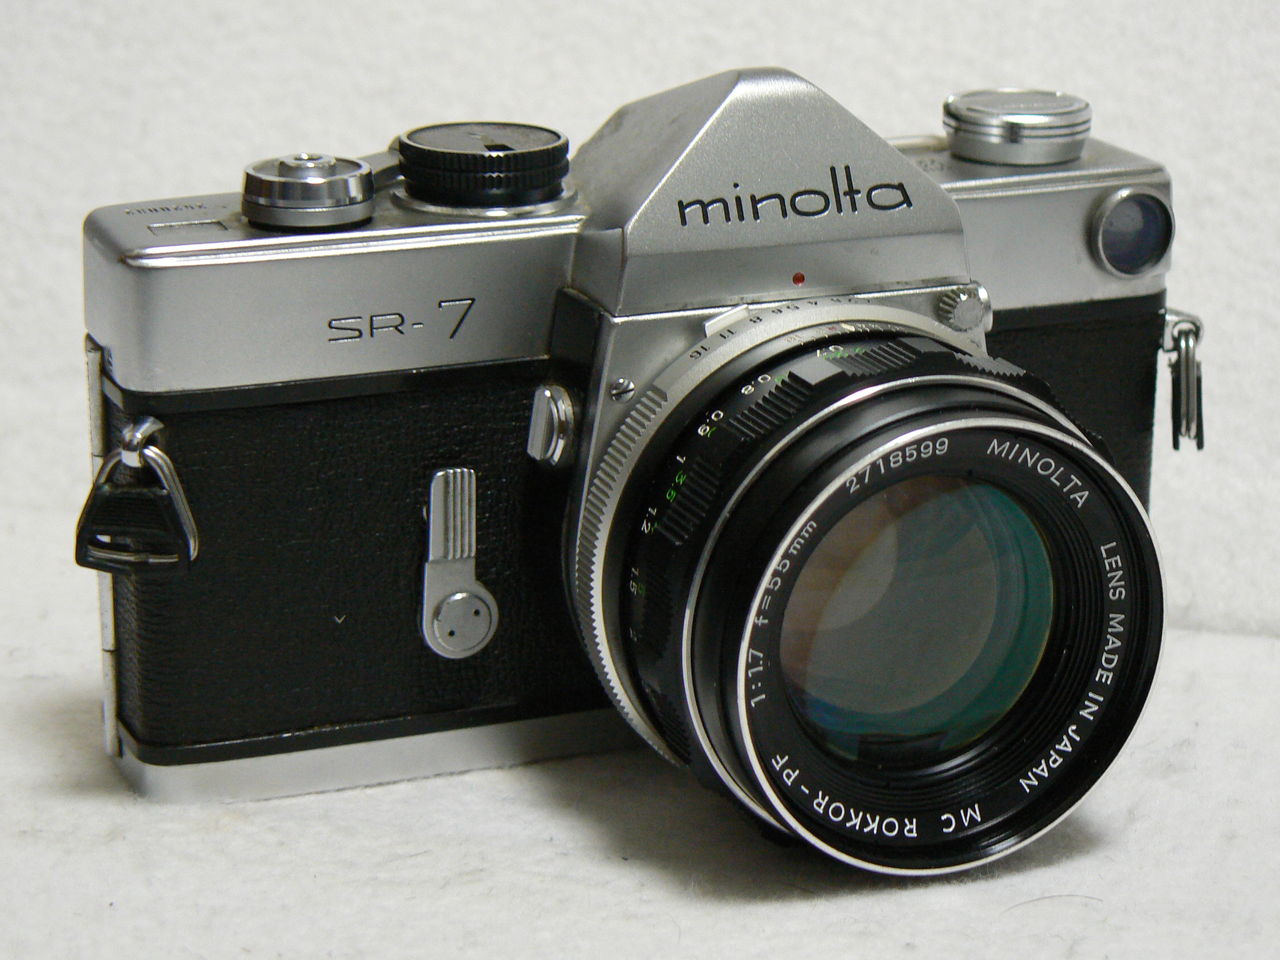 (ミノルタ) MINOLTA SR-7【カメラ フィルム一眼】